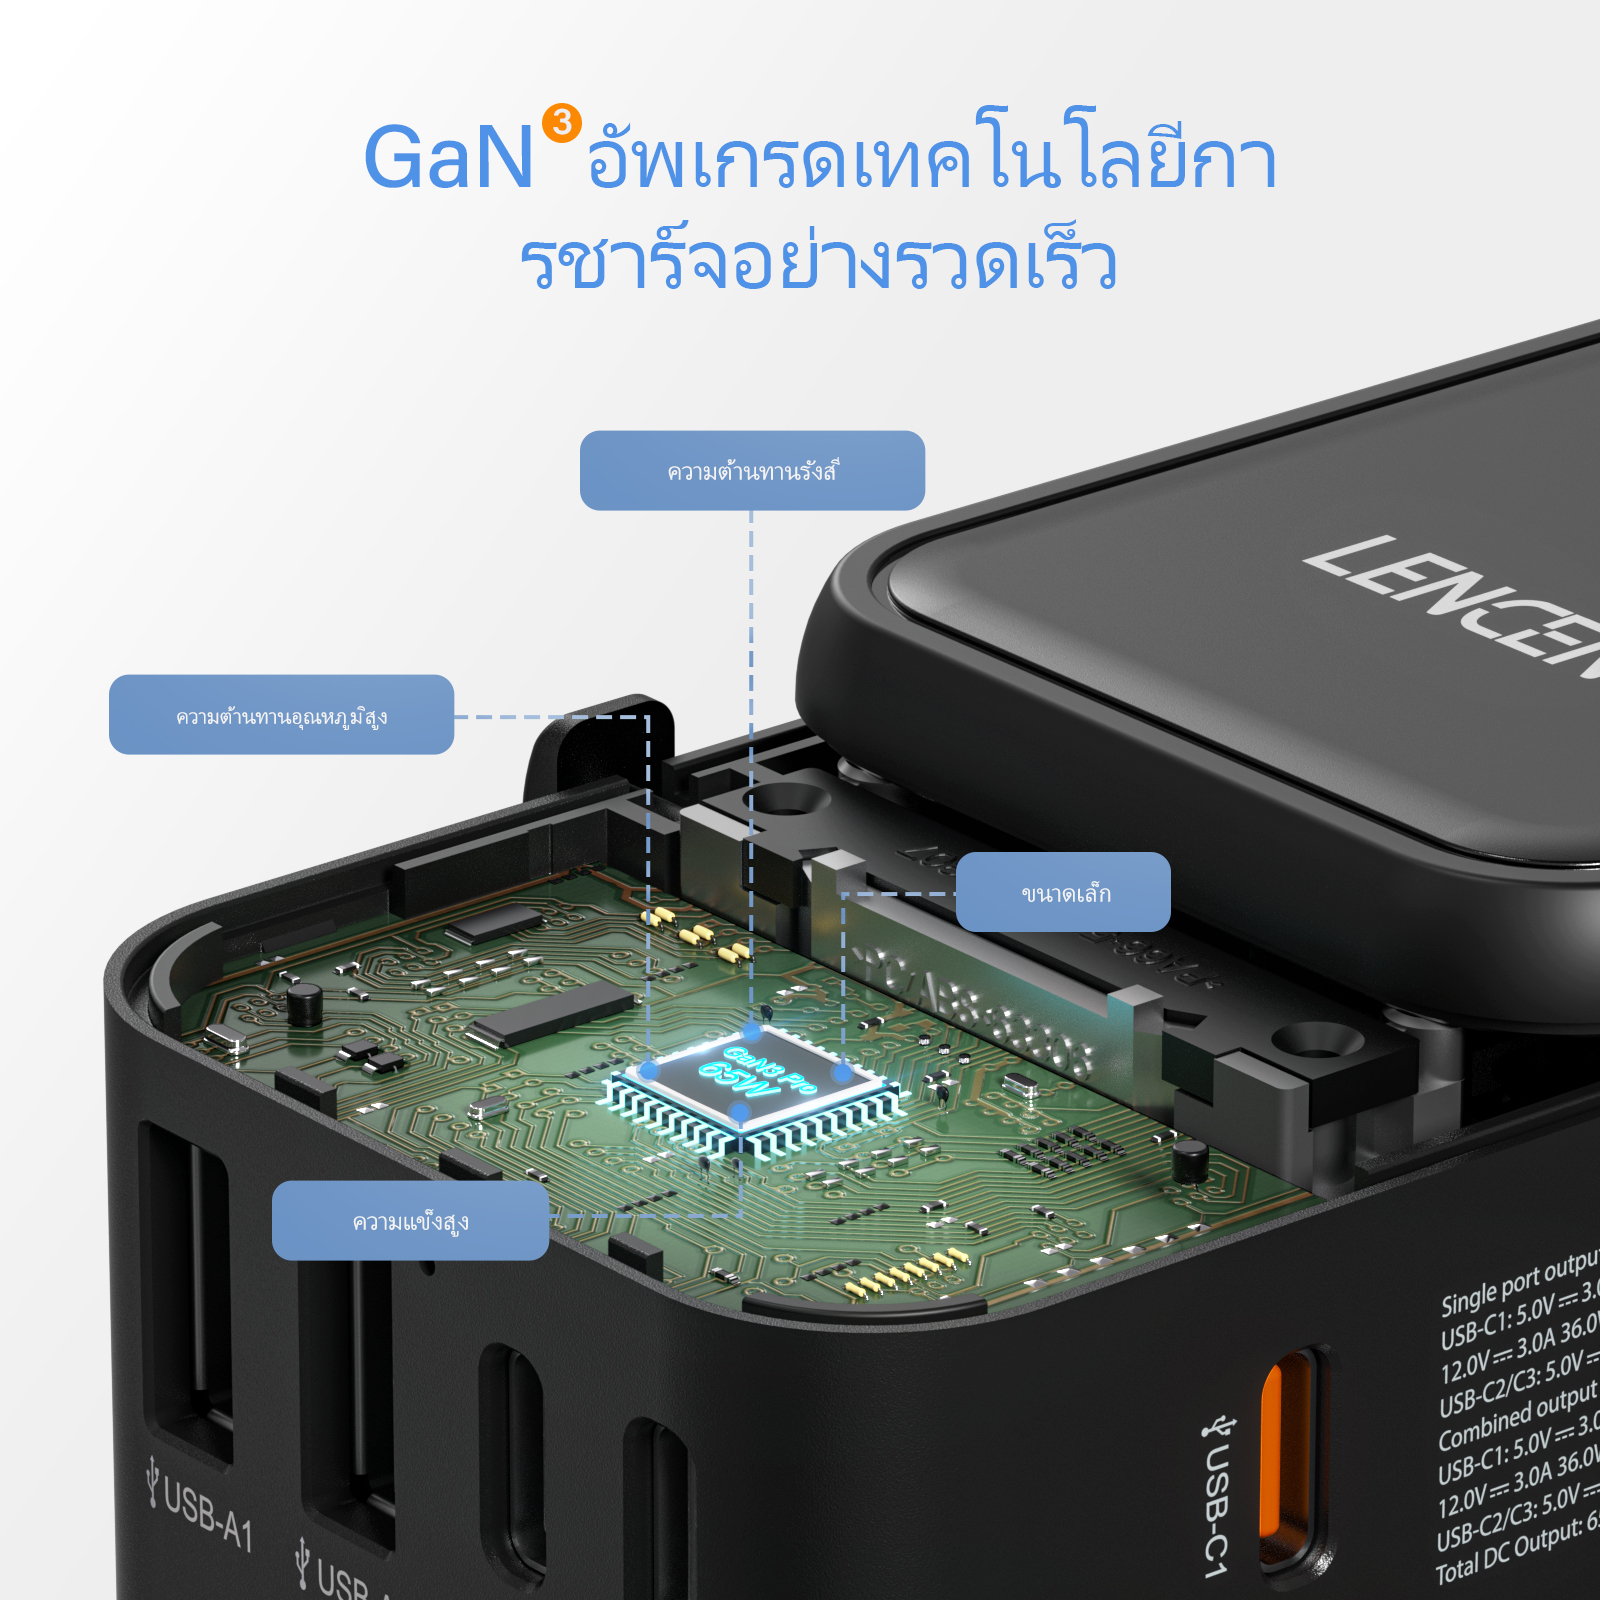 รูปภาพเพิ่มเติมเกี่ยวกับ Lencent Gan III 65W Universal Travel Adapter, เครื่องชาร์จนานาชาติที่มีพอร์ต USB 2 พอร์ตและ 3 USB-C PD อะแดปเตอร์ชาร์จอย่างรวดเร็ว, เครื่องชาร์จผนังทั่วโลกพร้อมเครื่องชาร์จ Fast Type-C สำหรับ iPhone, Samsung, แล็ปท็อป, Type A/C/G/I